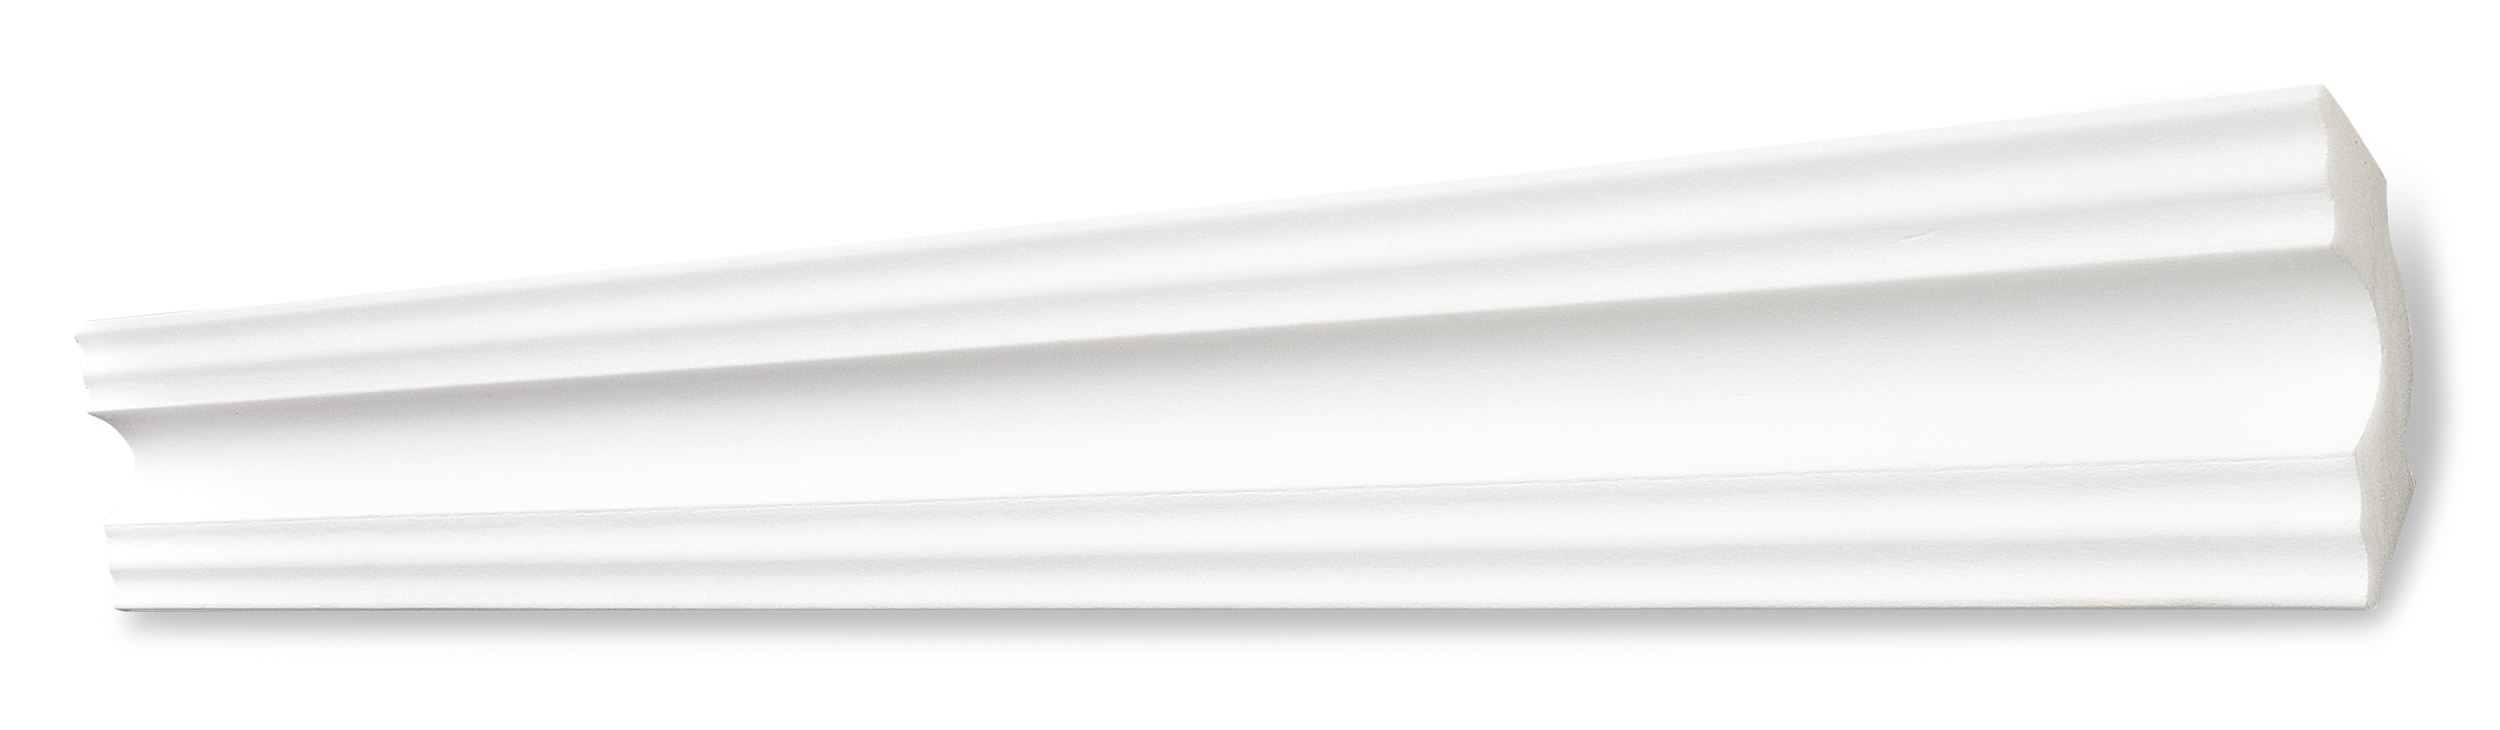 DECOSA Moulure A50 - polystyrène - blanc - 50 x 50 mm - longueur 2 m